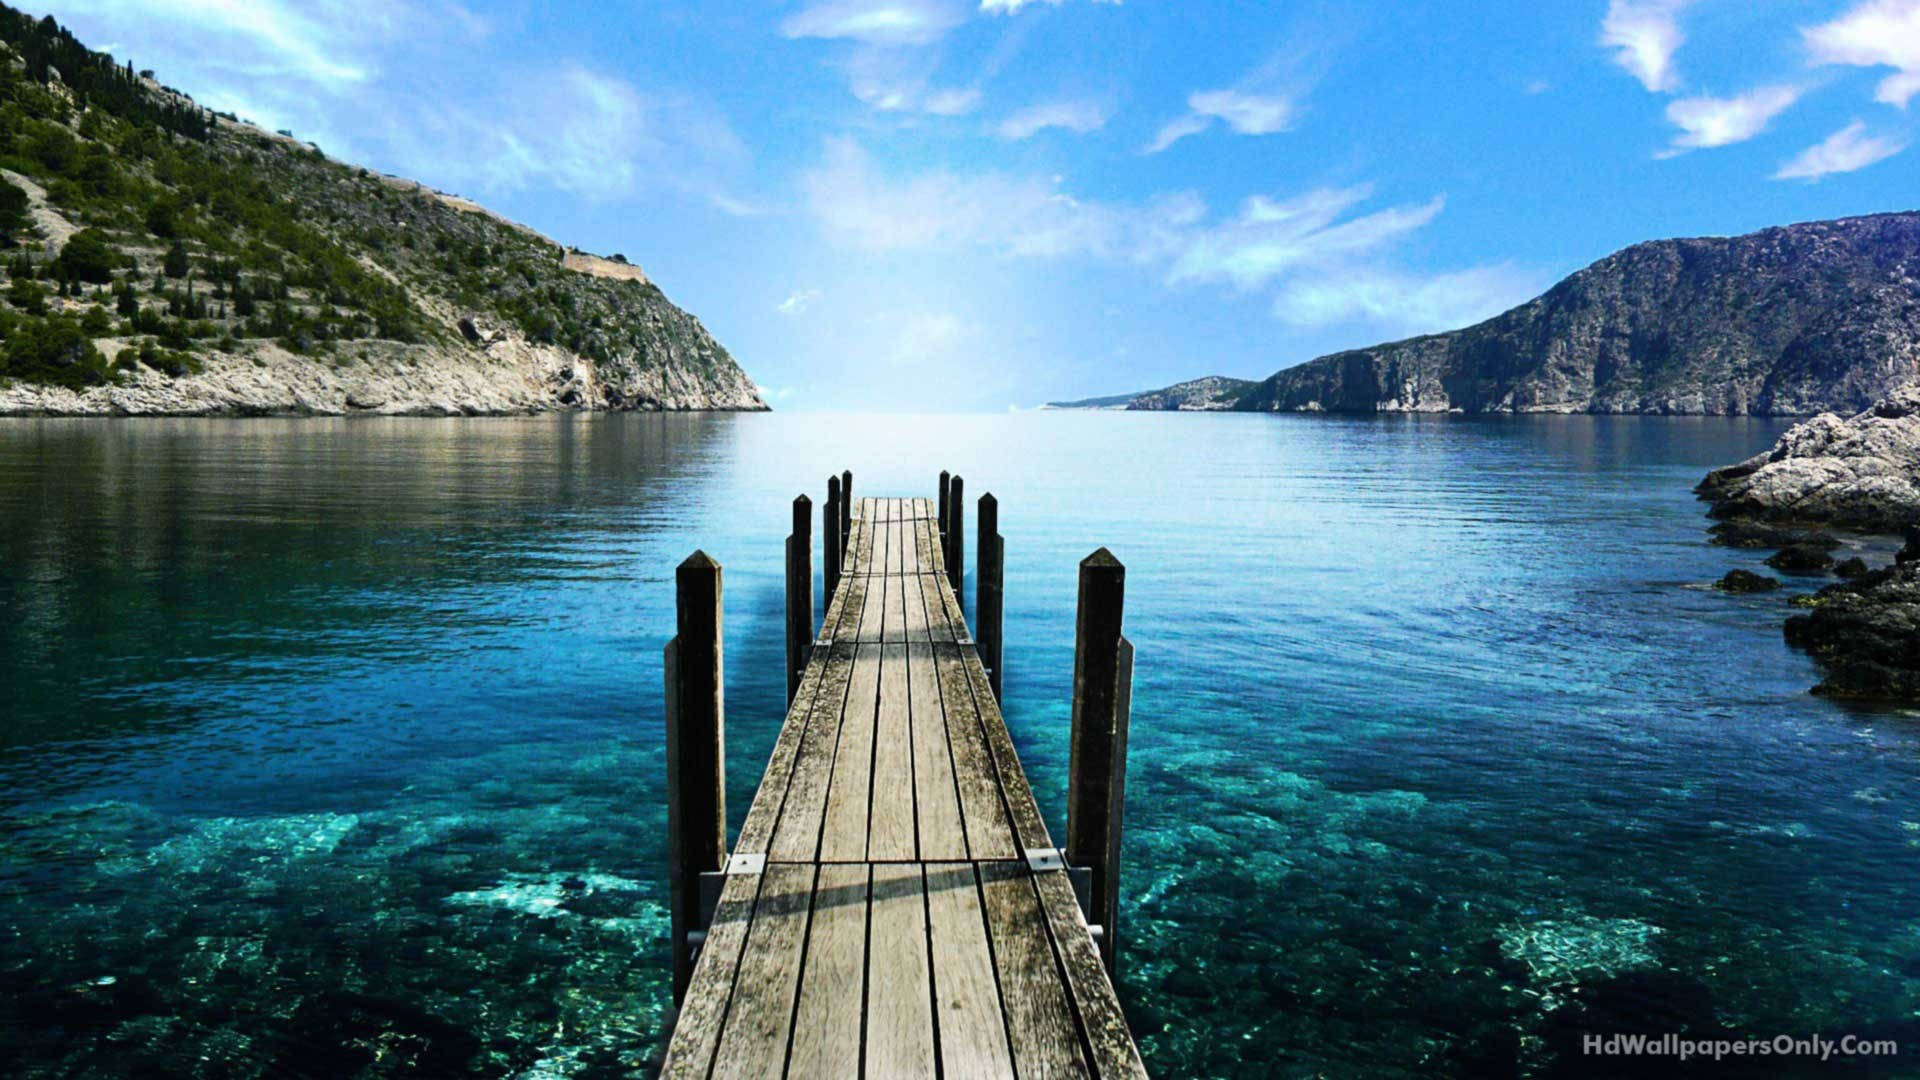 HD wallpaper of wooden dock on clear blue ocean. 